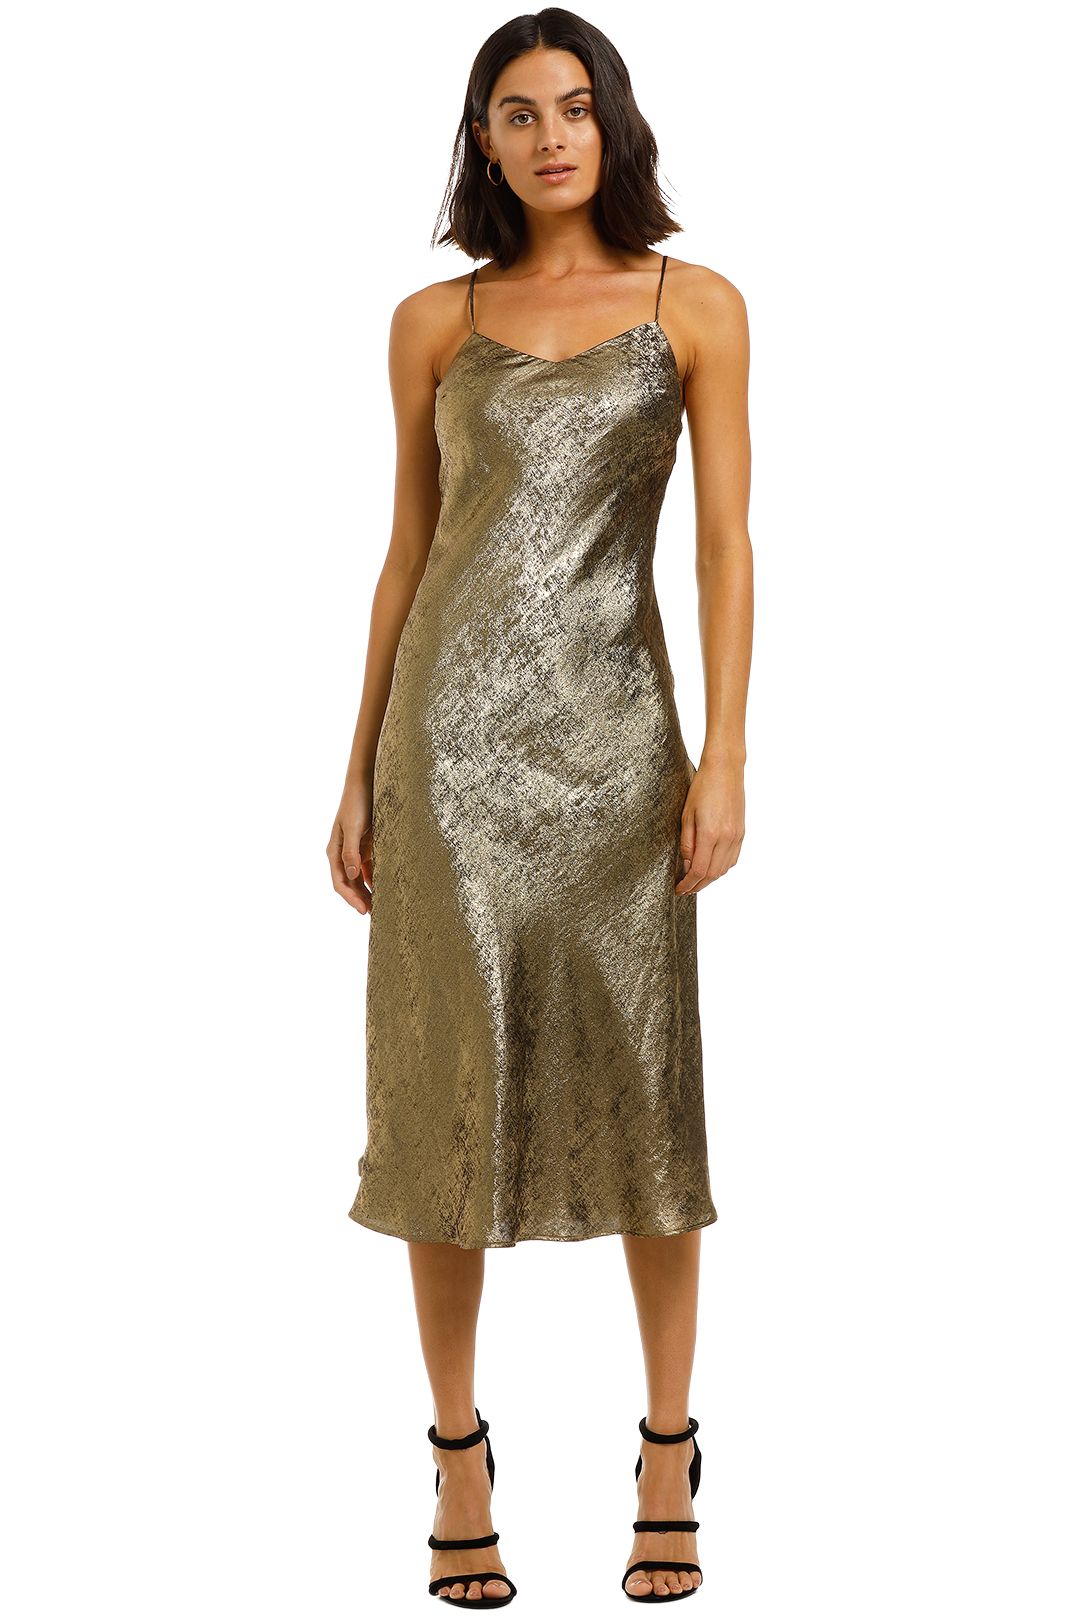 gold designer dresses online